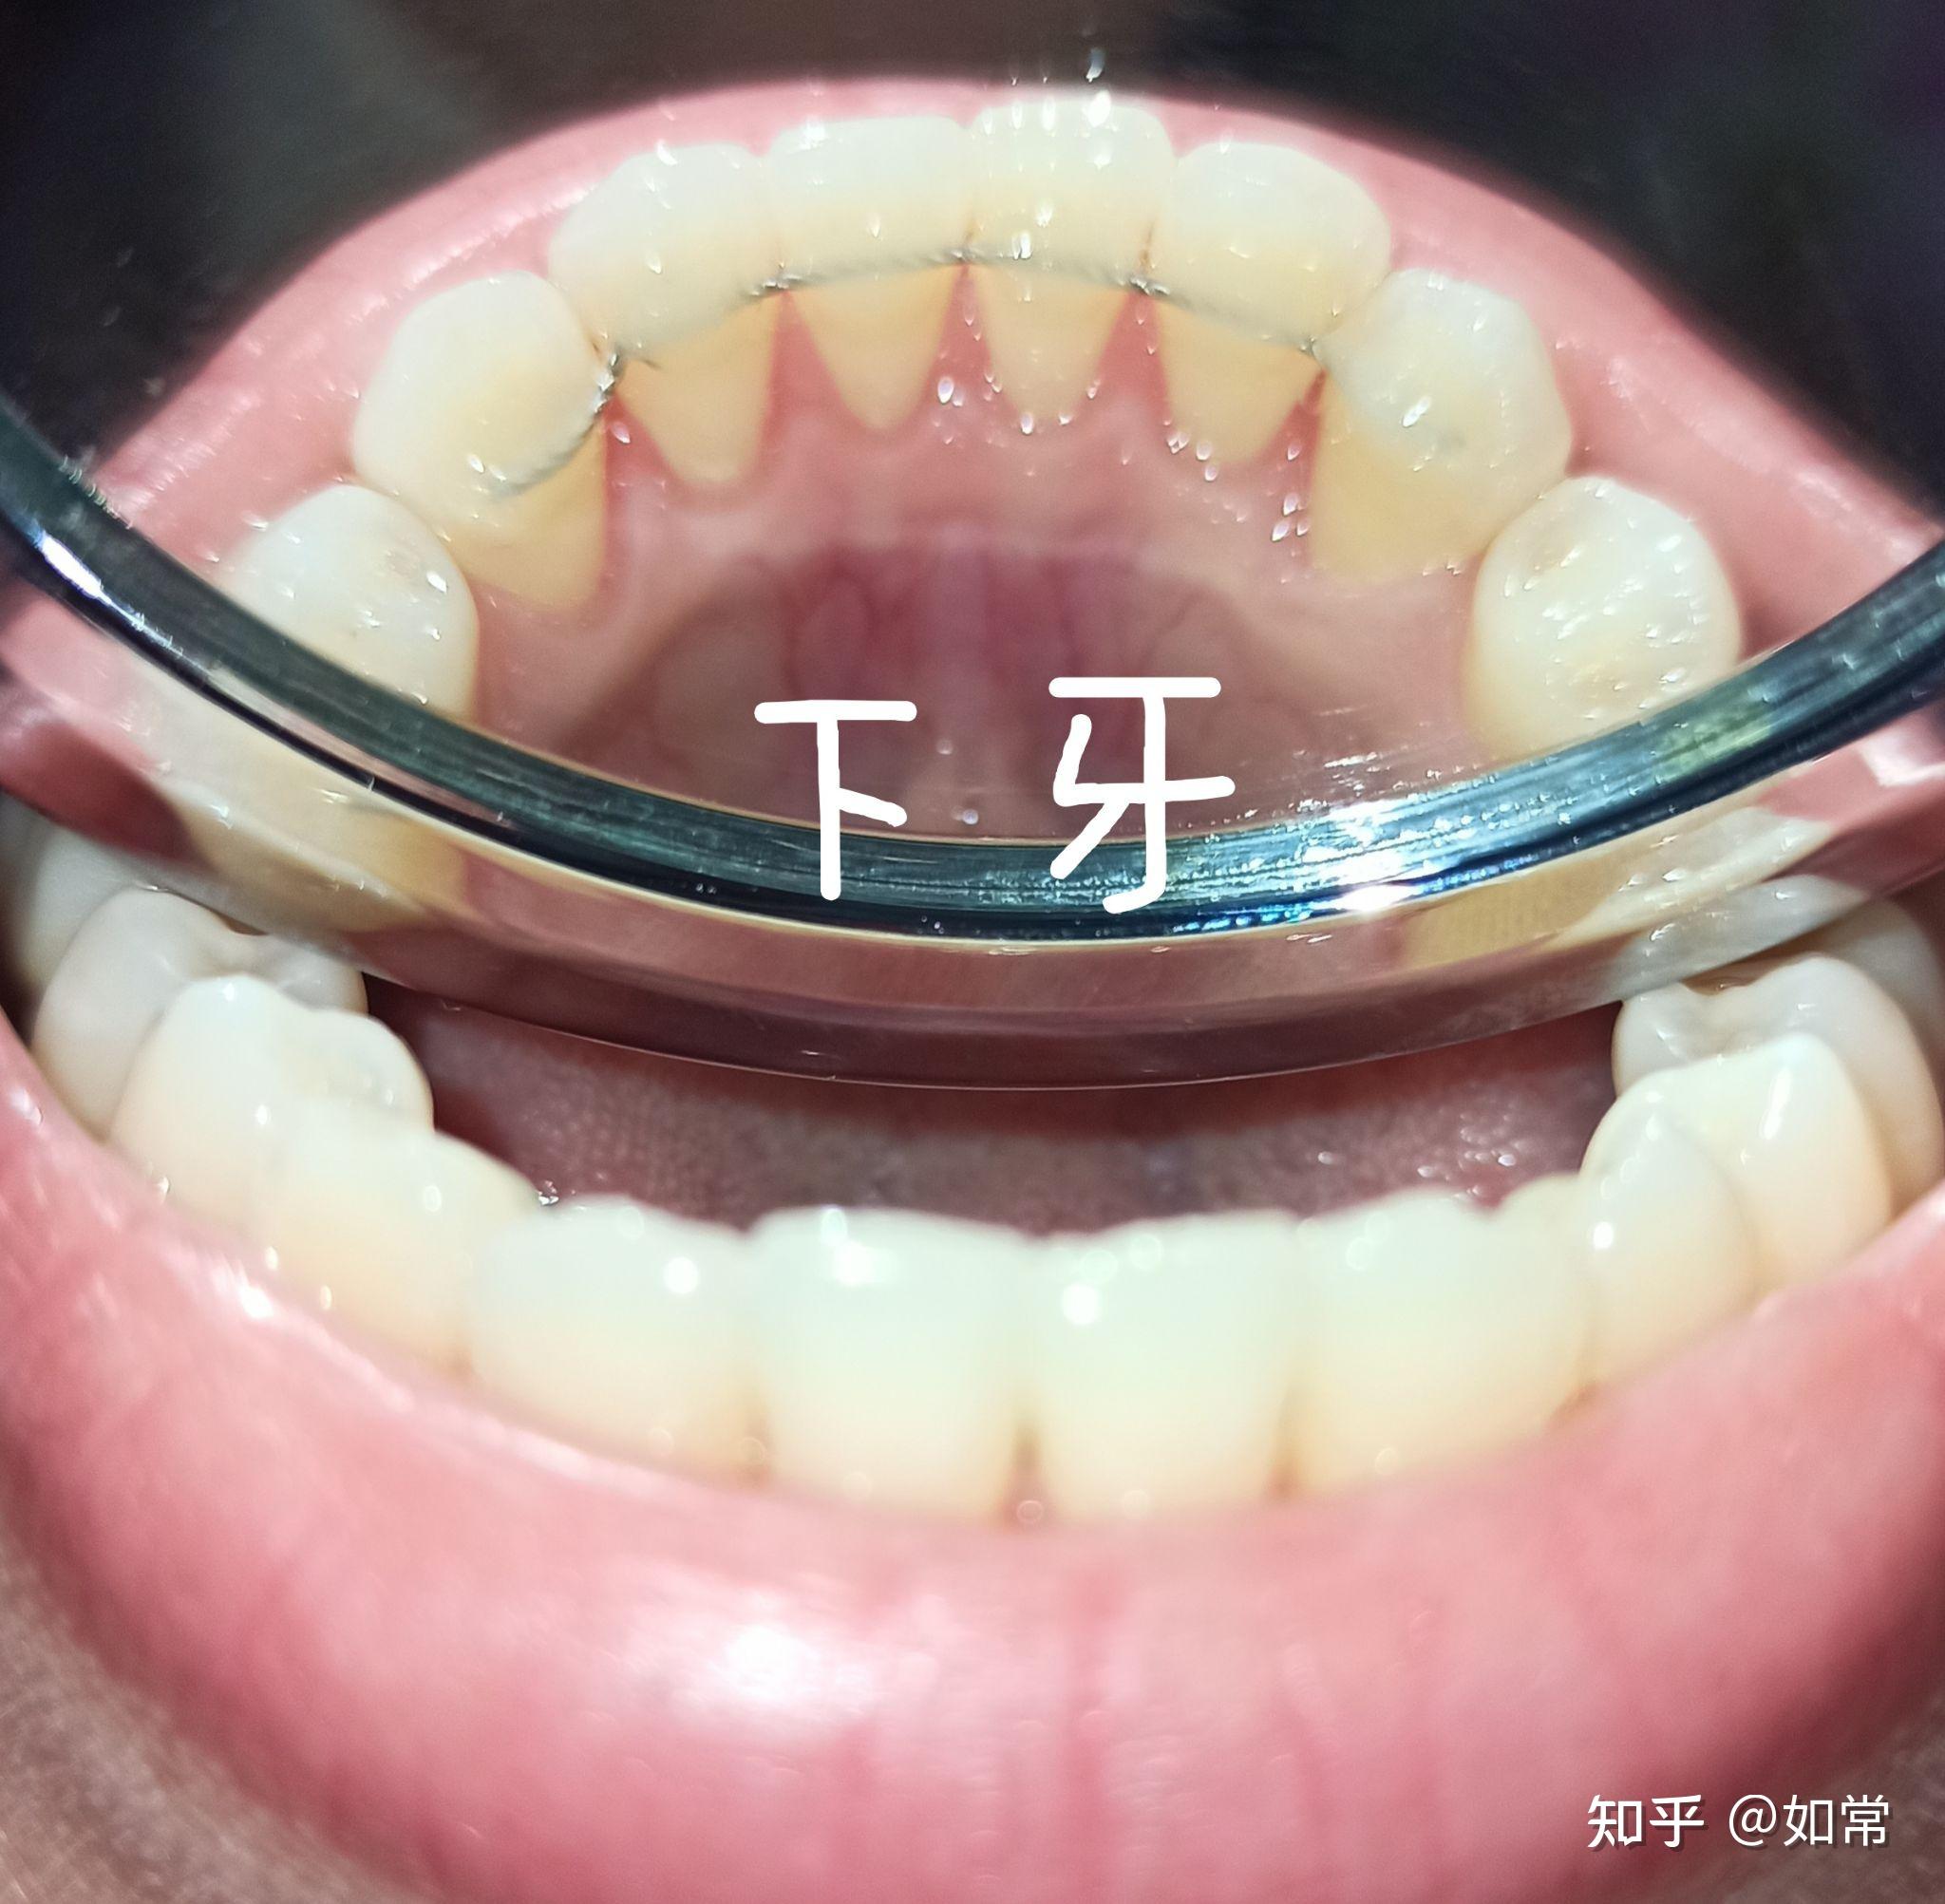 门牙戴牙冠的过程图解-图库-五毛网